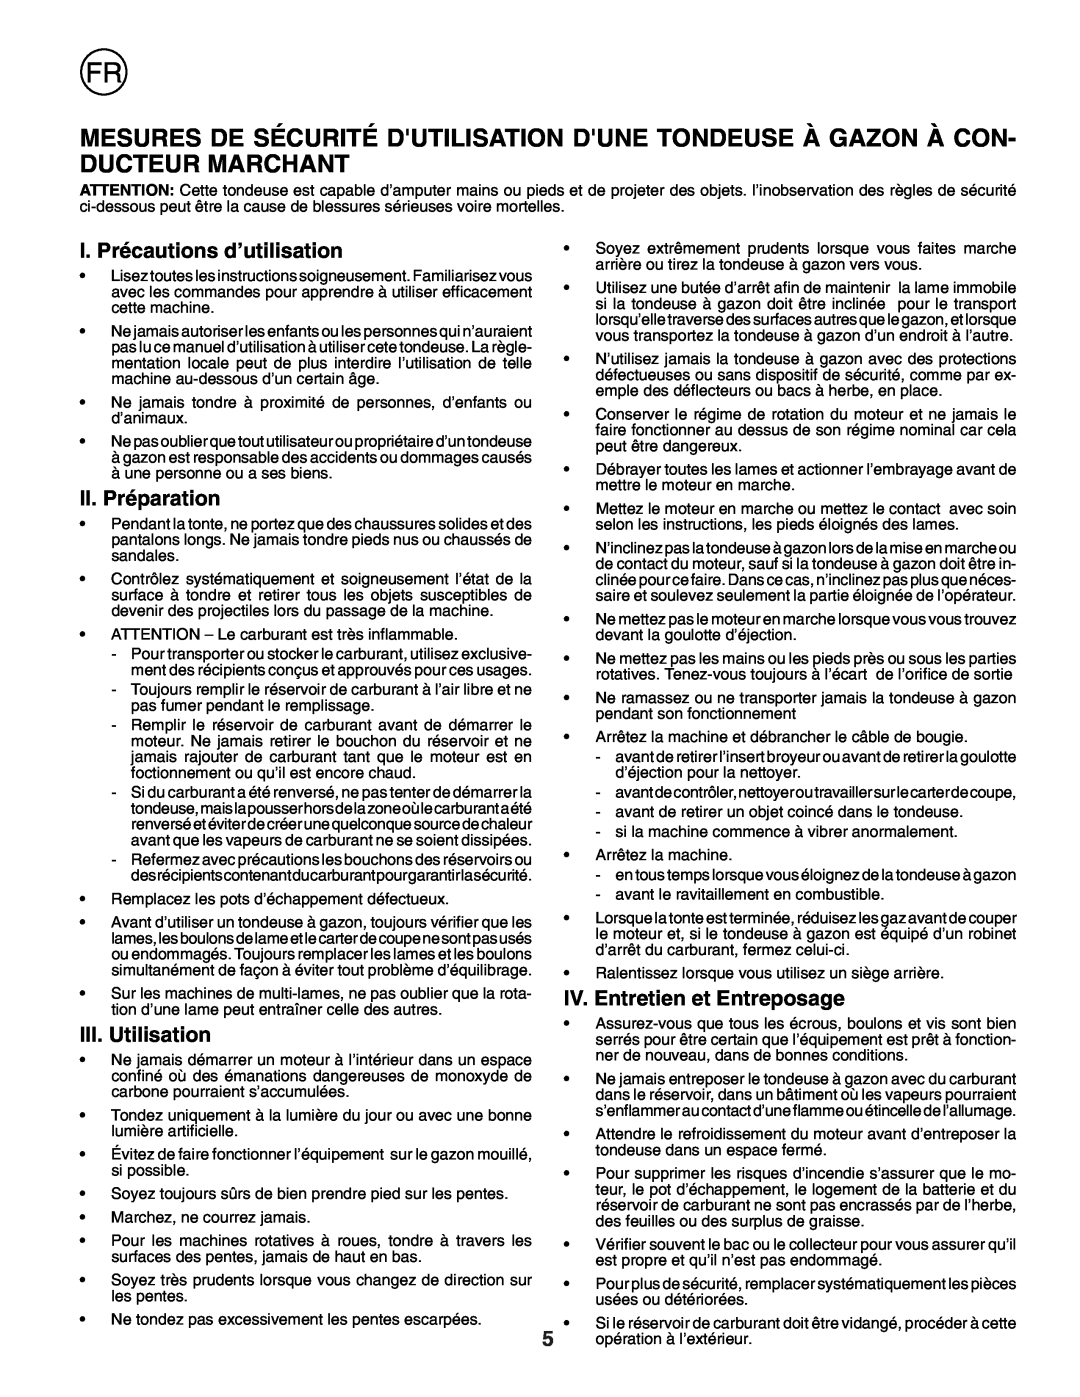 Husqvarna J50R I. Précautions d’utilisation, II. Préparation, III. Utilisation, IV. Entretien et Entreposage 